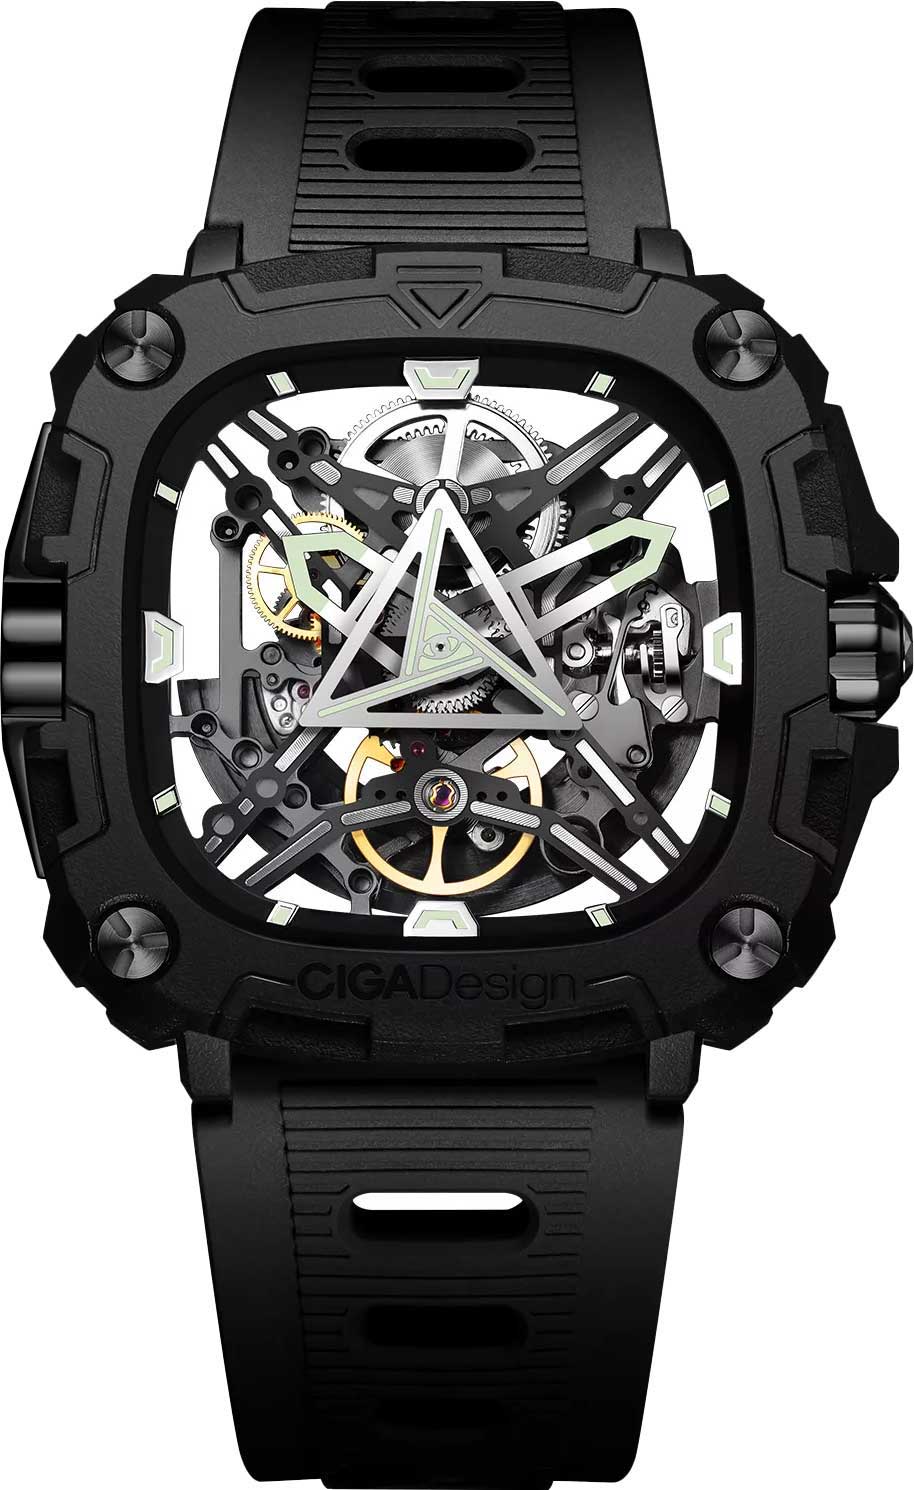 Наручные часы мужские CIGA Design X051-BB01-W5B